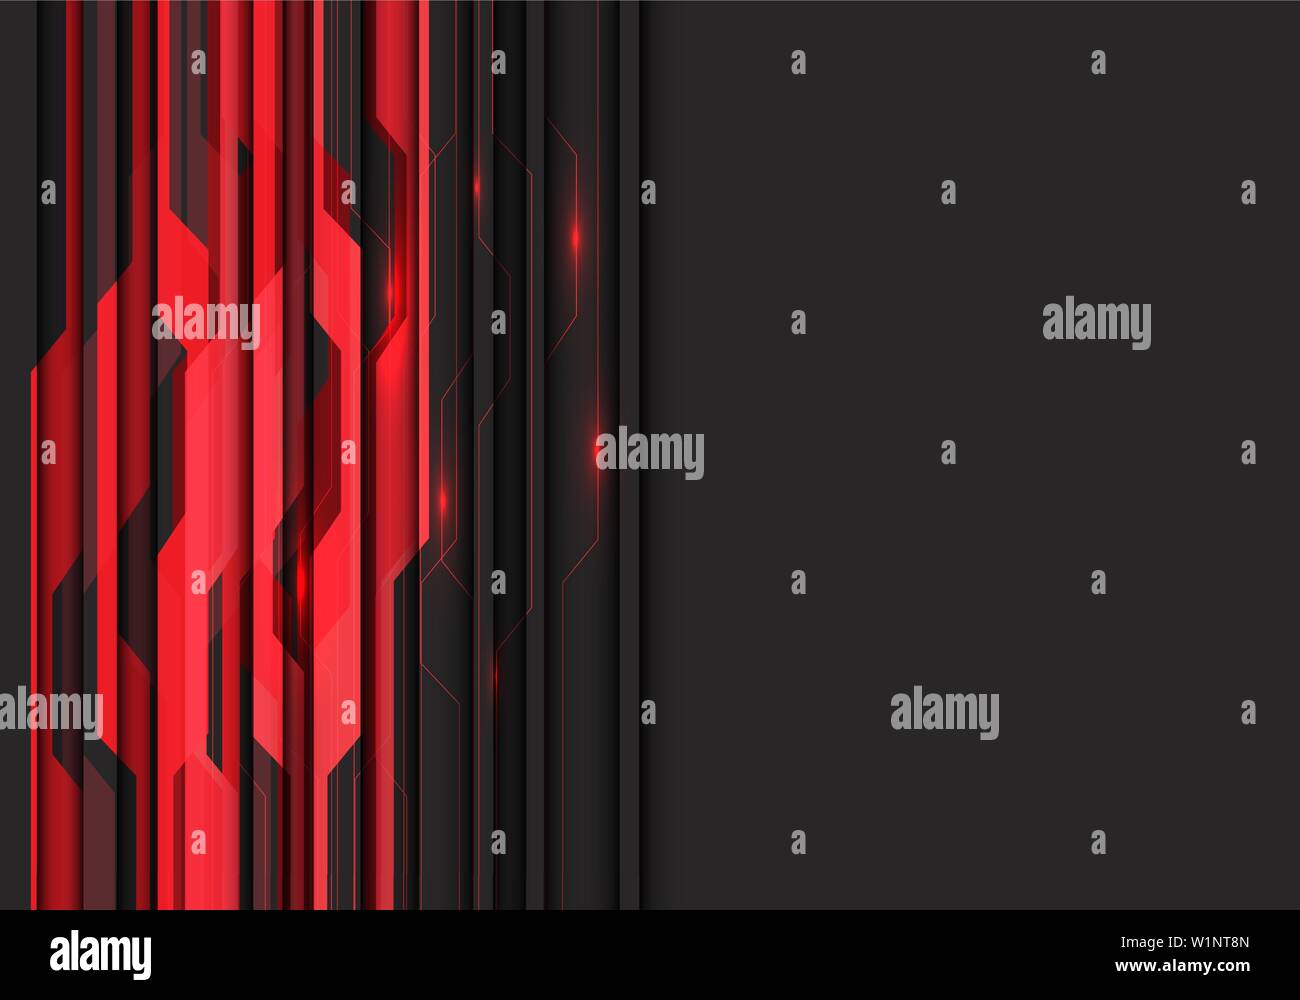 Abstract red circuit lumière avec un espace blanc gris foncé moderne design futuristic background vector illustration. Illustration de Vecteur